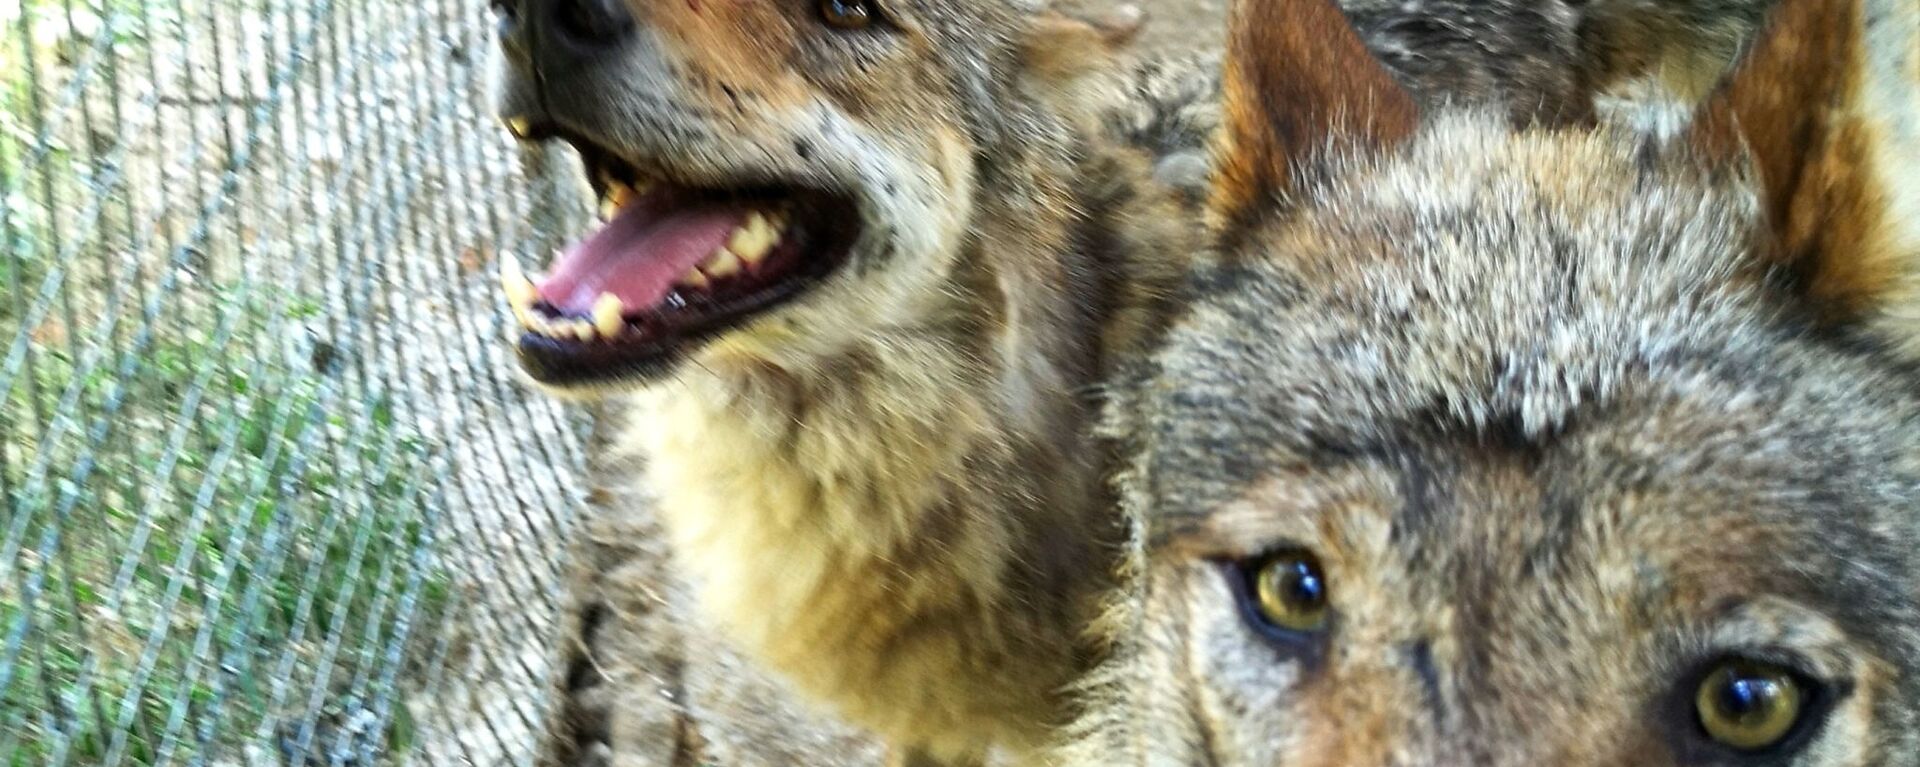 Волки в мини-зоопарке Кекавиняс личи Игоря Малинаускаса - Sputnik Латвия, 1920, 17.06.2021